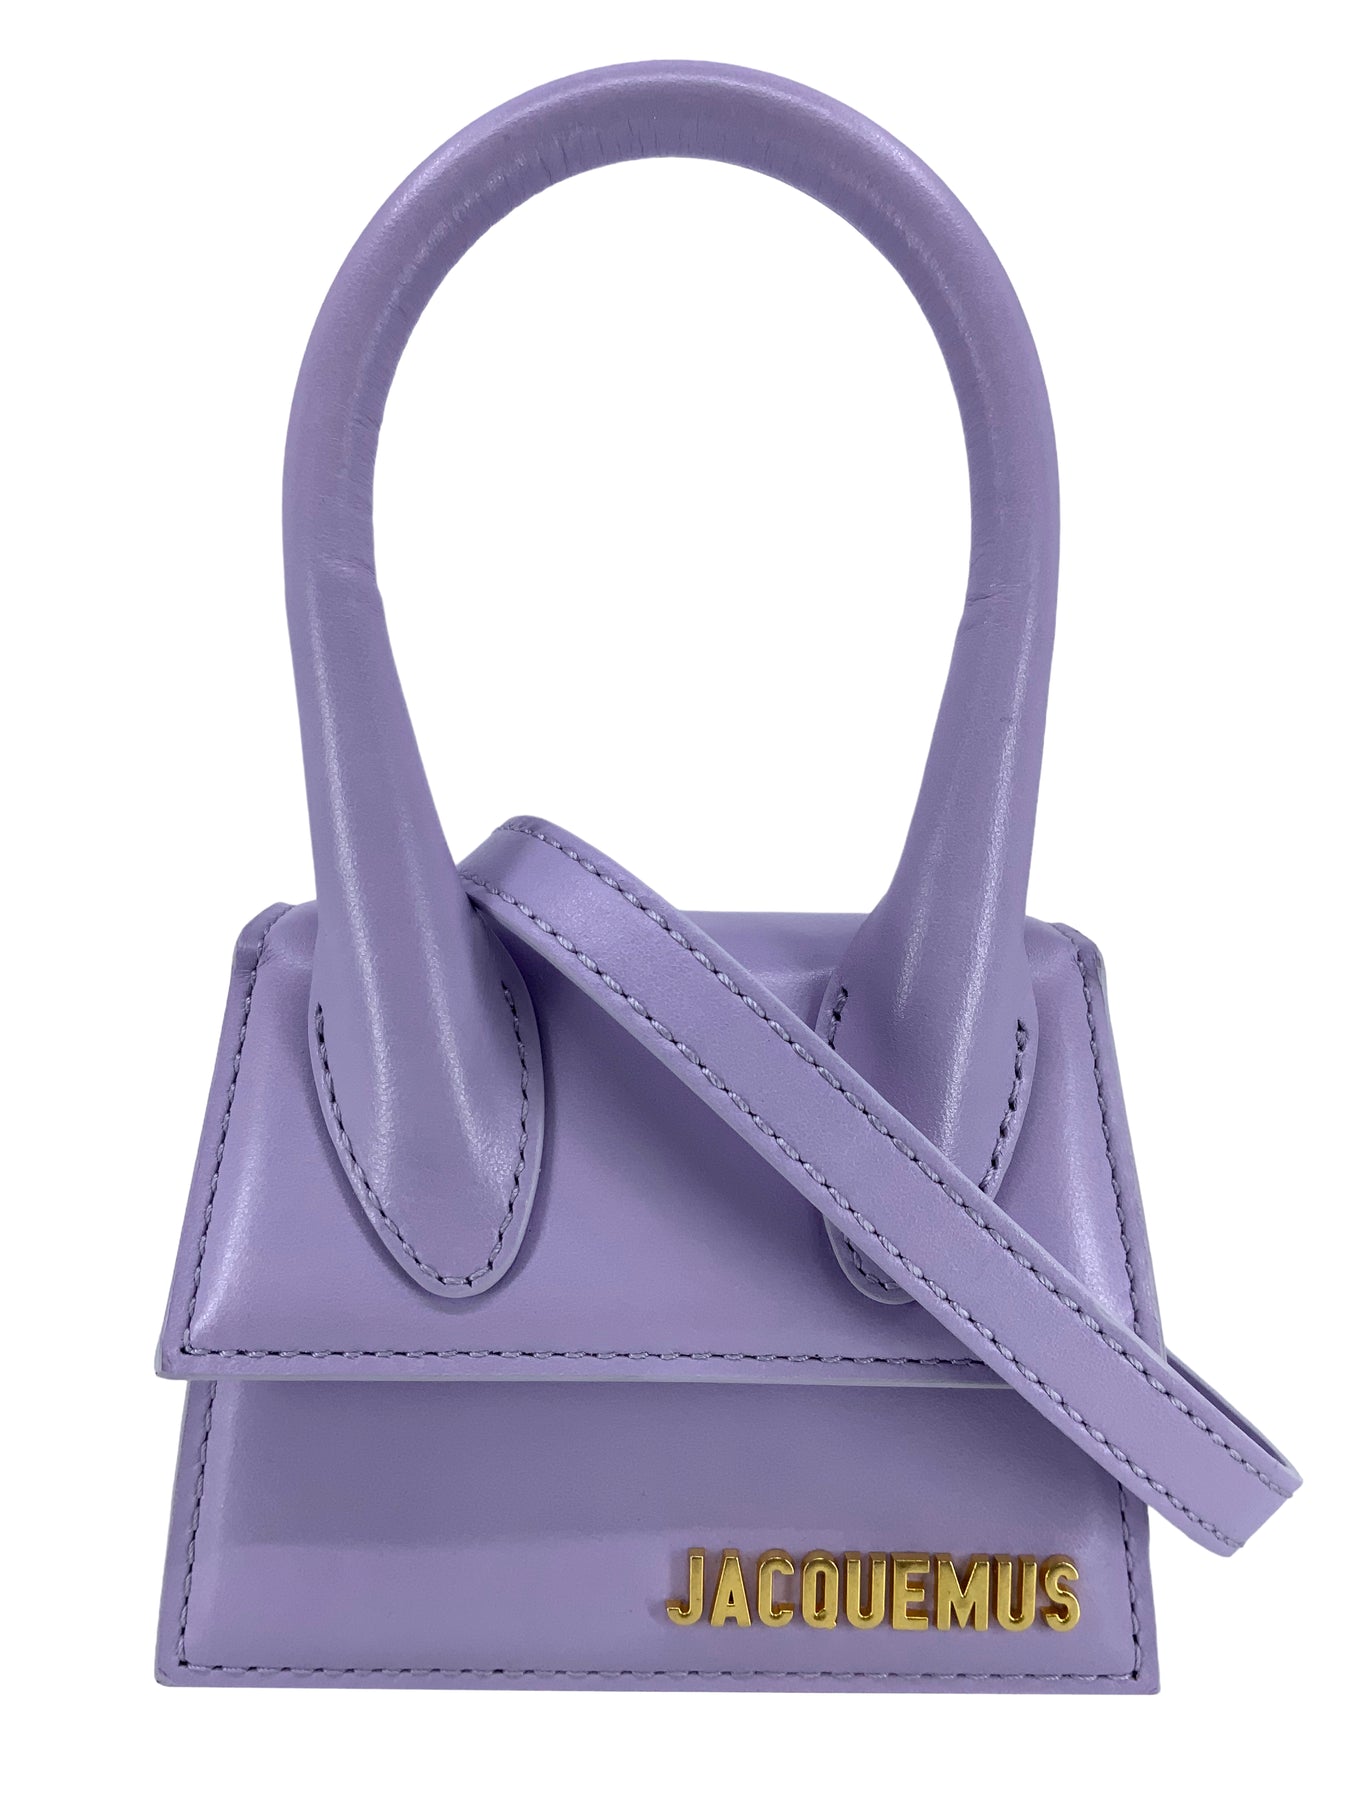 Jacquemus Le Chiquito Medium Leather Top Handle Bag In Purple